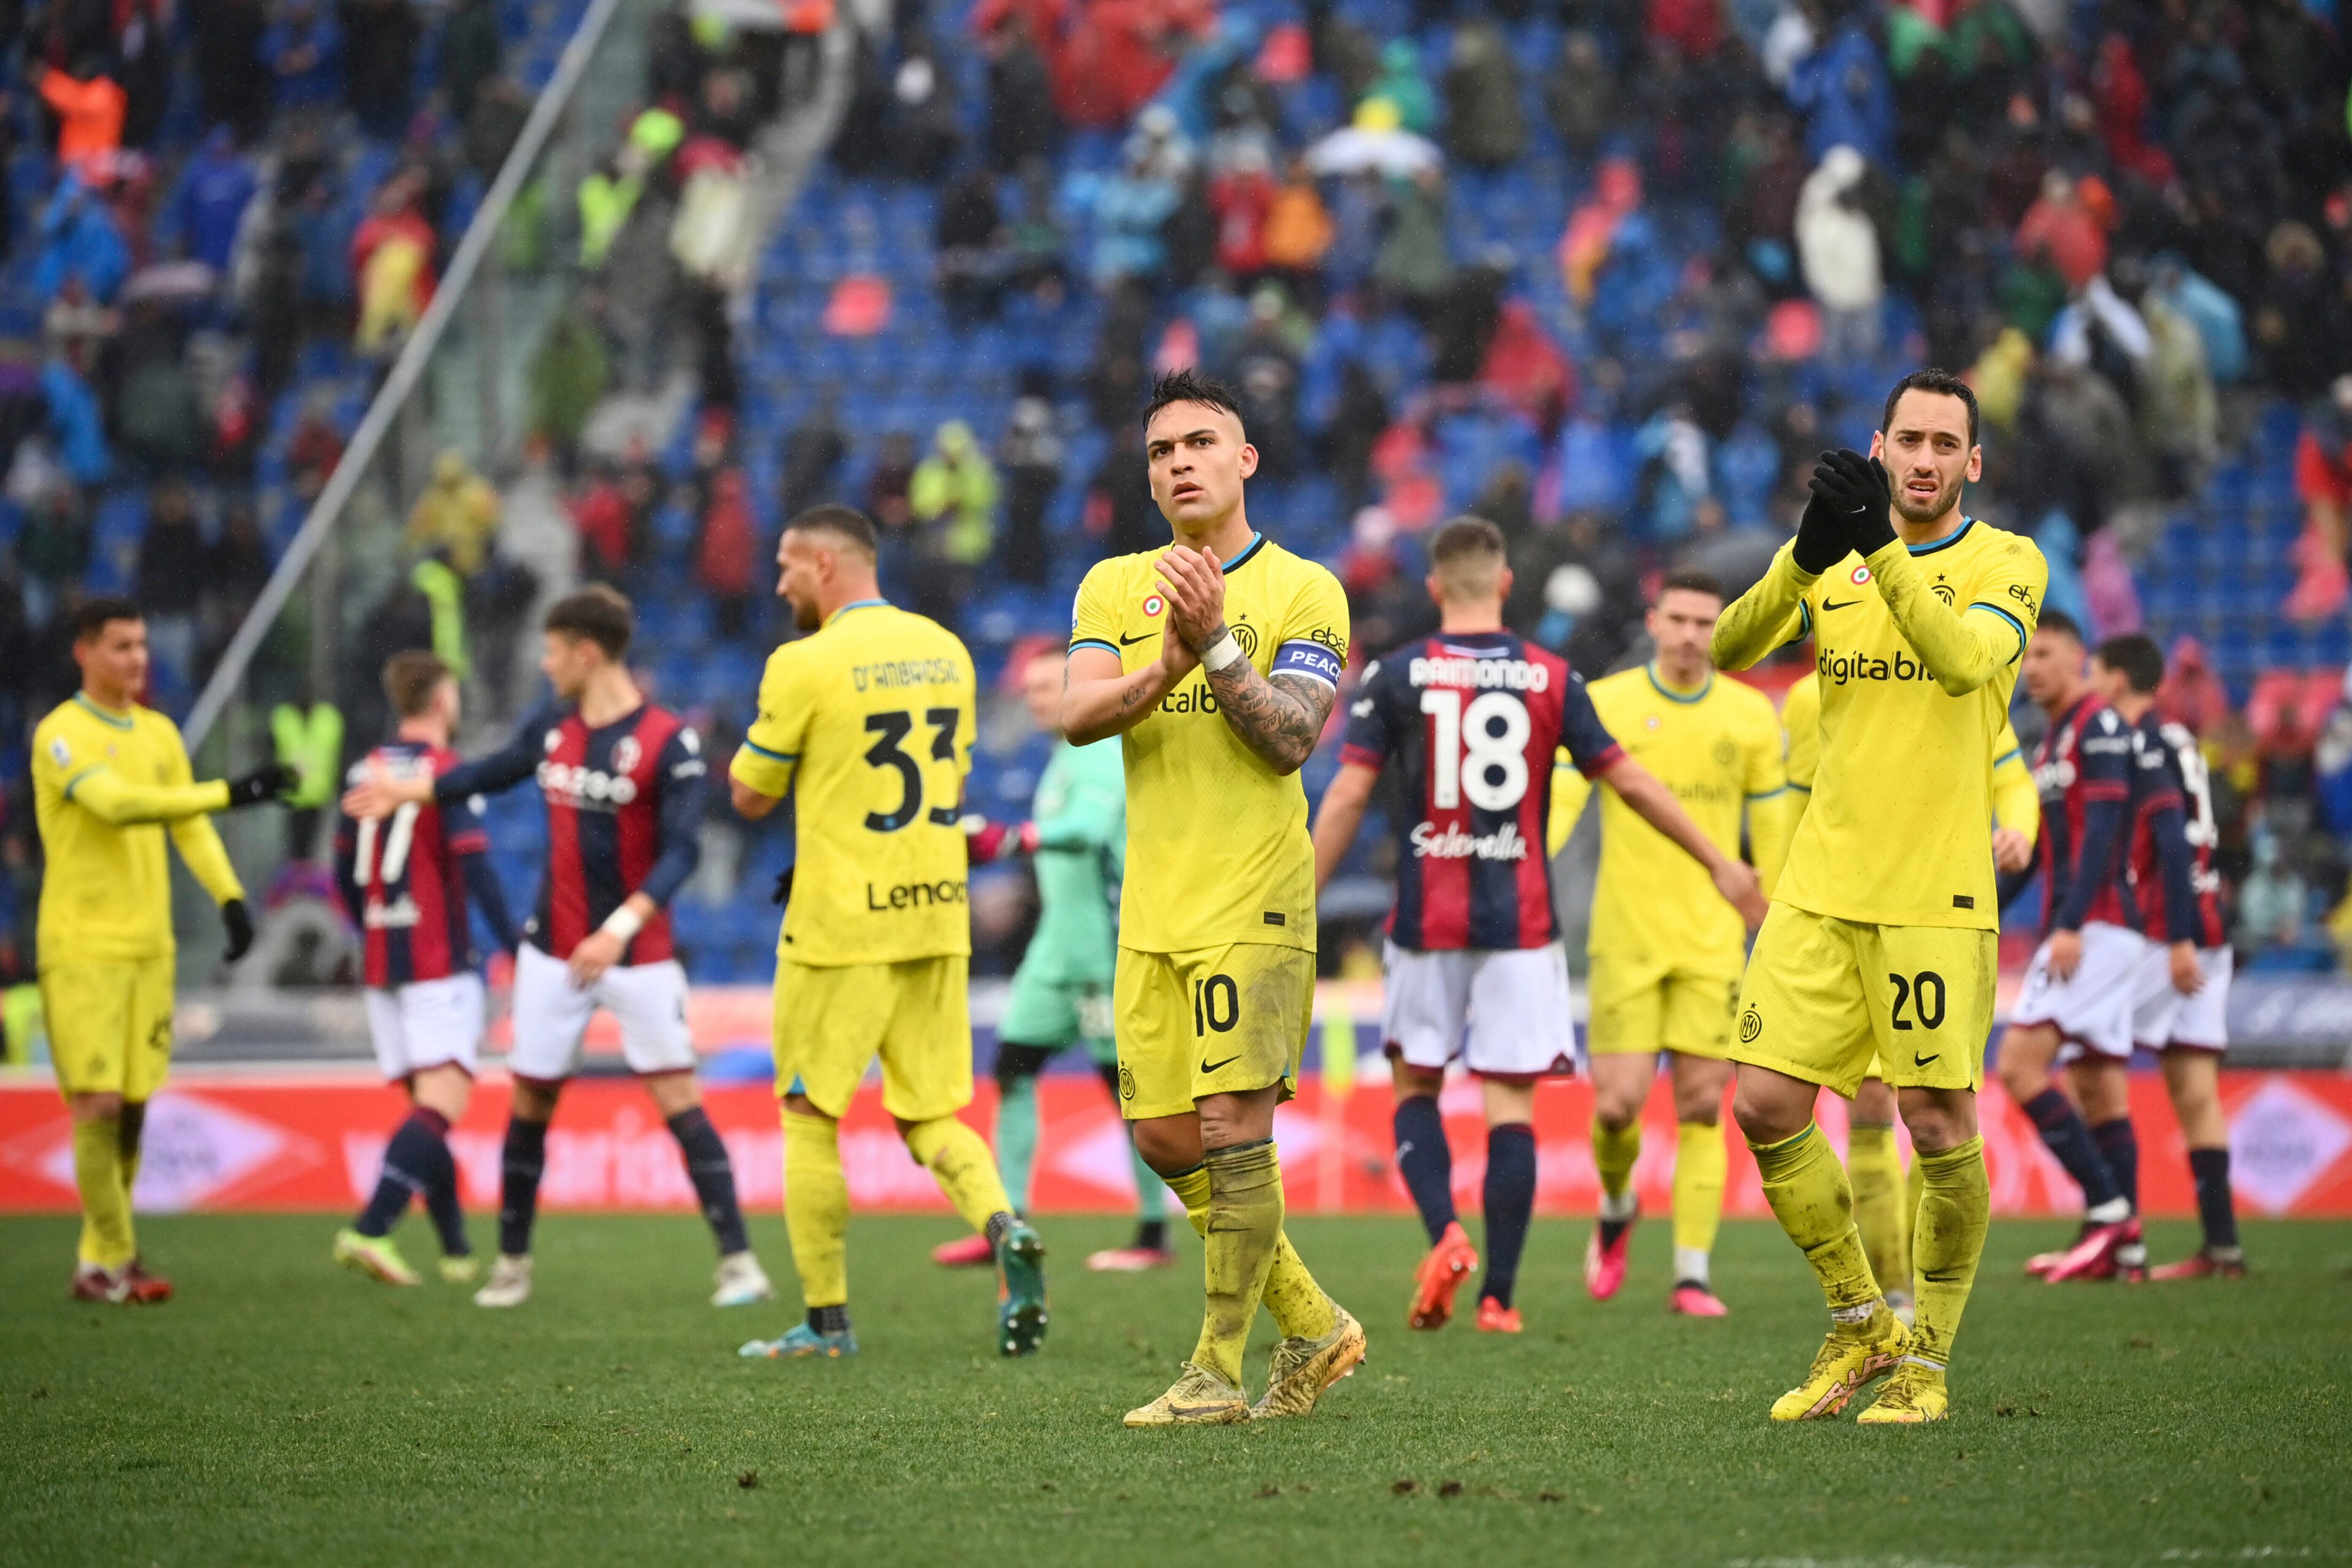 Lautaro Martínez (centro) y Hakan Calhanoglu (derecha) saludan a la afición tras la derrota 1-0 ante Bologna en la Serie A italiana, el domingo 26 de febrero de 2022. (Massimo Paolone/LaPresse vía AP)